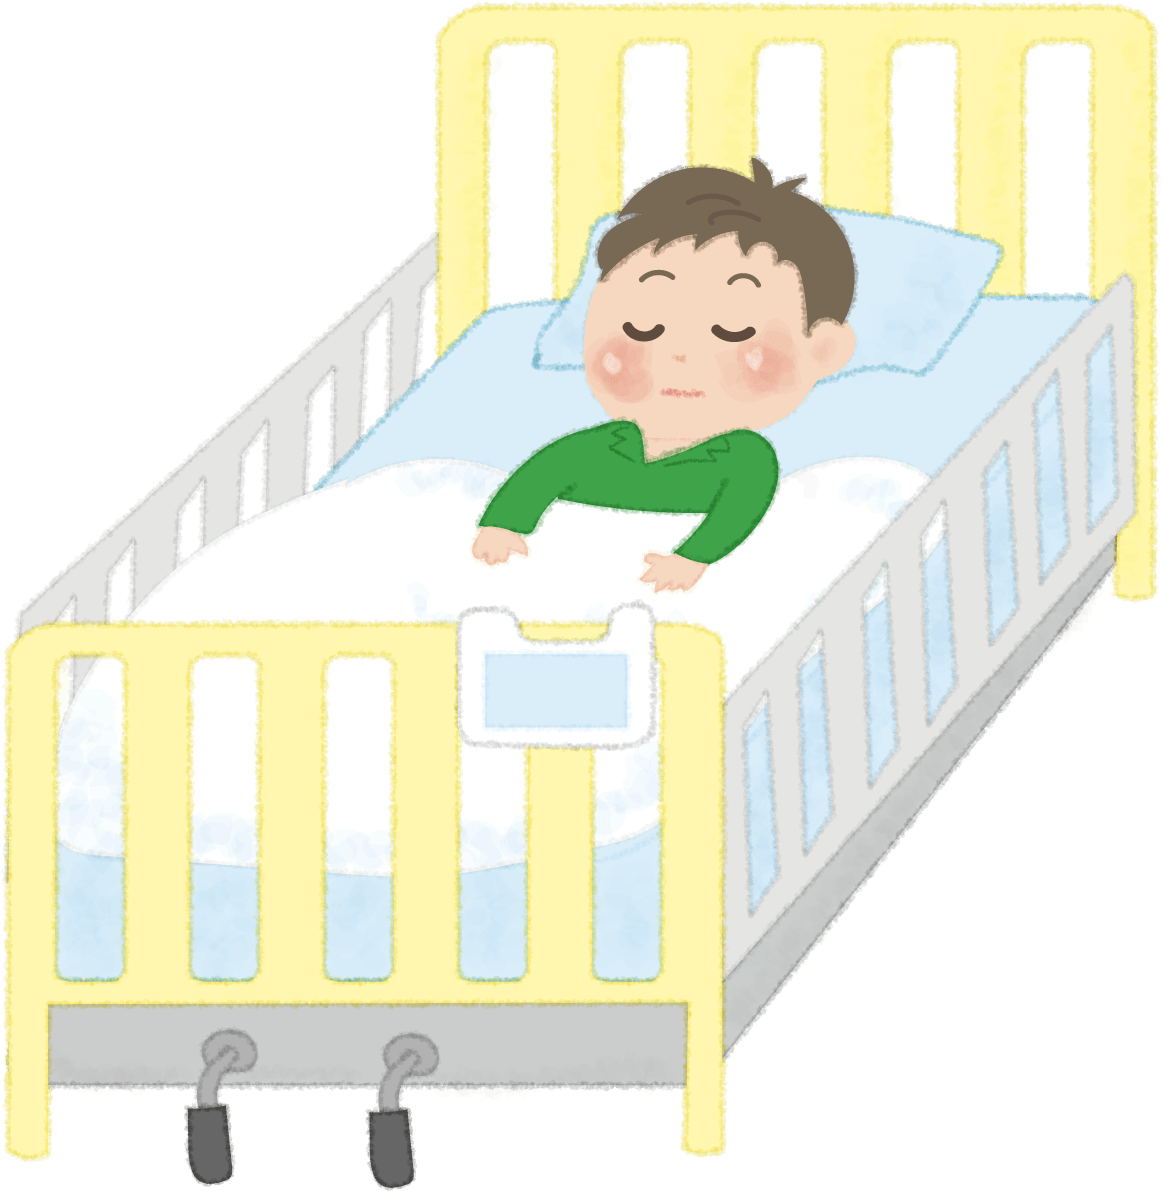 かわいい子どもが病院のベッドで寝ているイラスト 男の子 病院 イラスト素材 超多くの無料かわいいイラスト素材